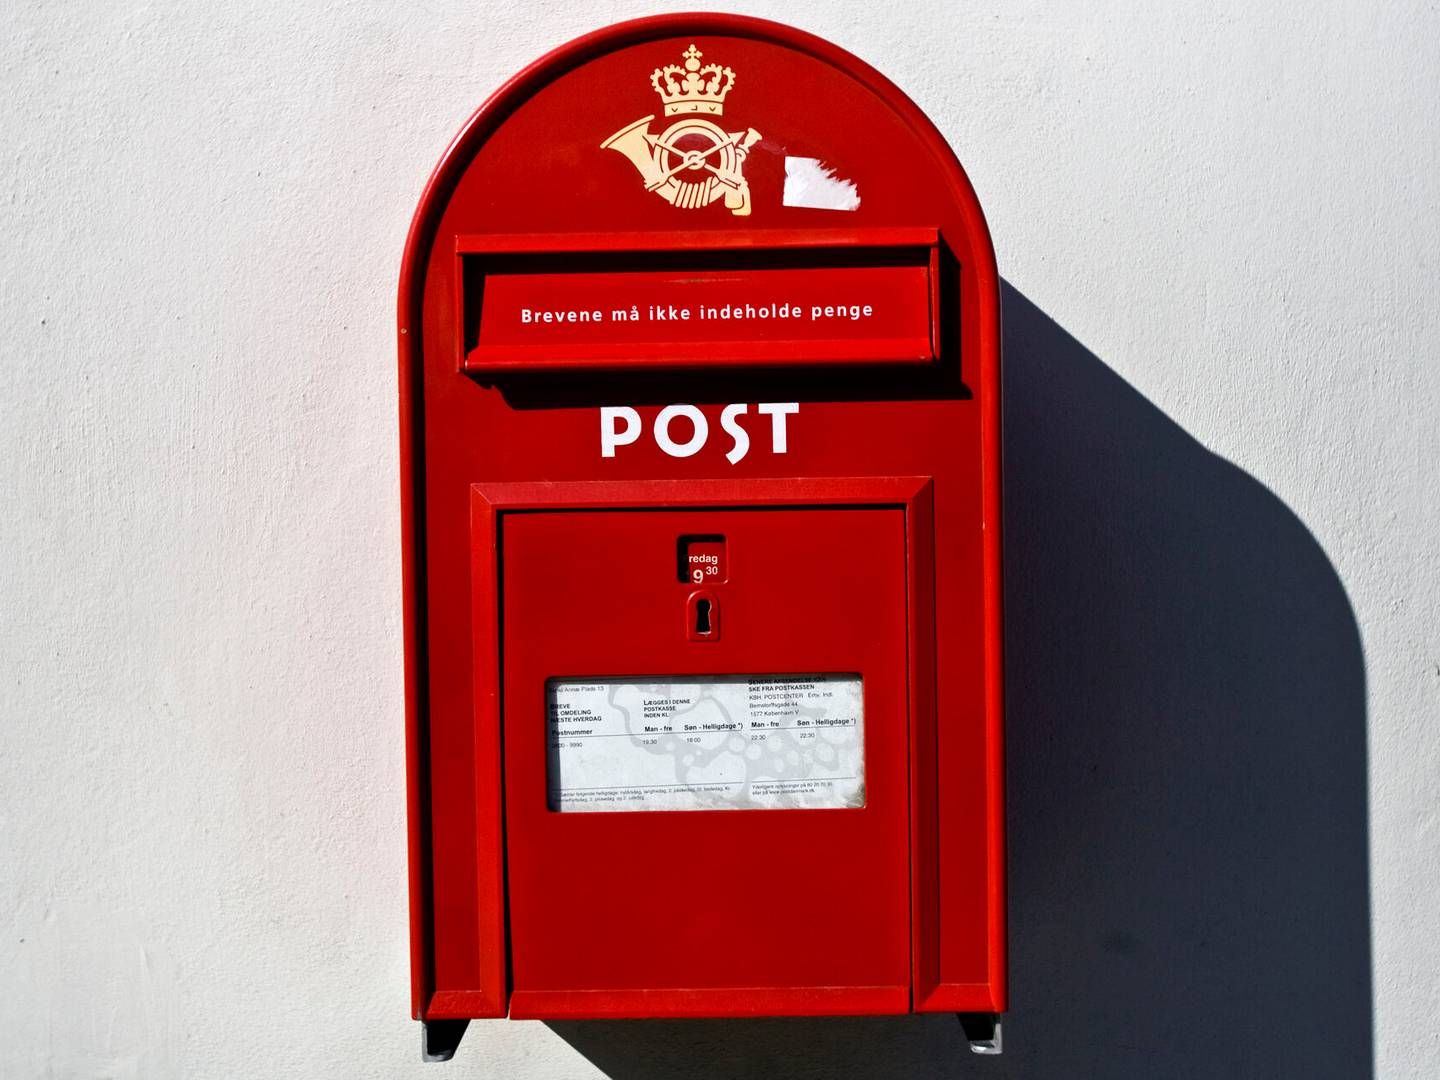 Ifølge MobilityWatchs oplysninger var der overvejelser om at give Postnord et helt år mere som følge af den svenske kritik. | Foto: Tobias Selnæs Markussen/Ritzau Scanpix